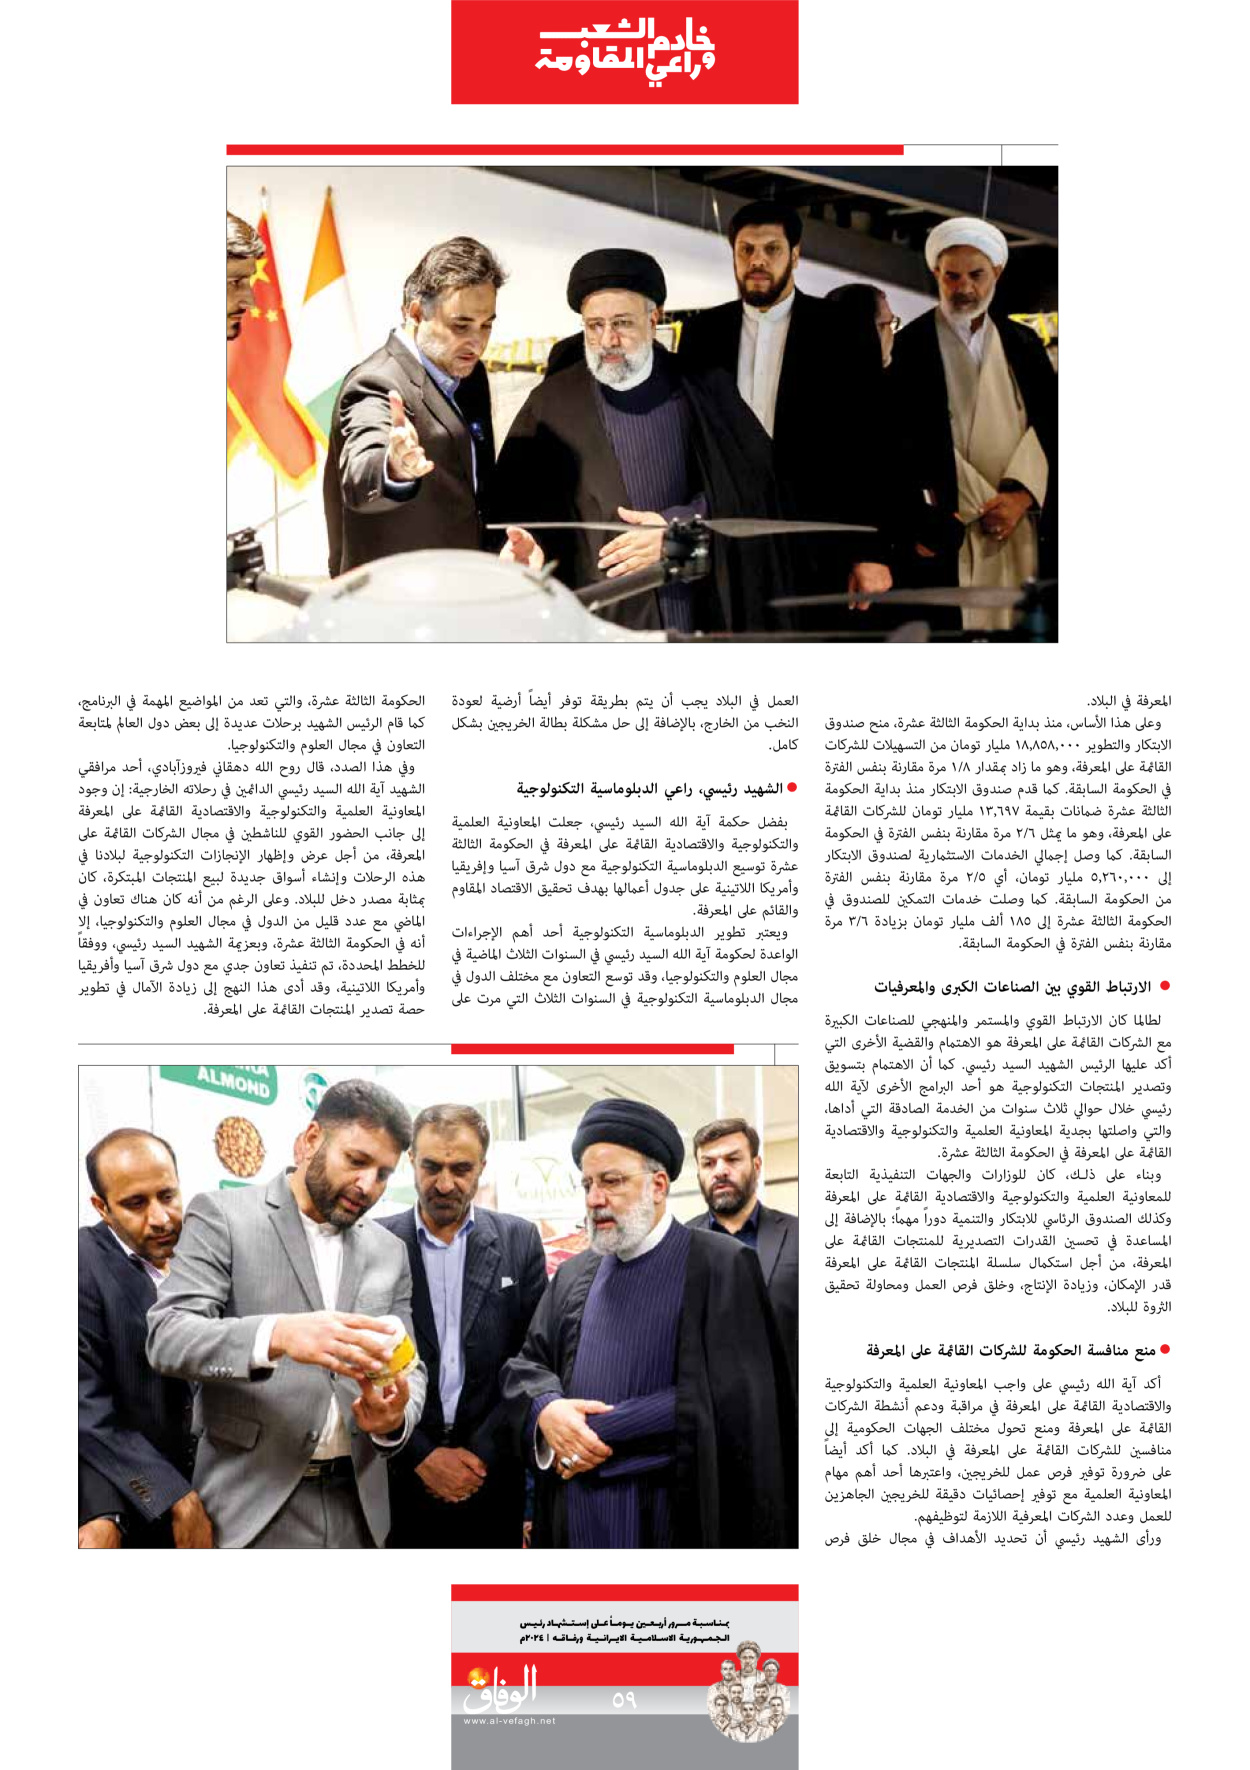 صحیفة ایران الدولیة الوفاق - ملحق ویژه نامه چهلم شهید رییسی - ٢٩ يونيو ٢٠٢٤ - الصفحة ٥۹